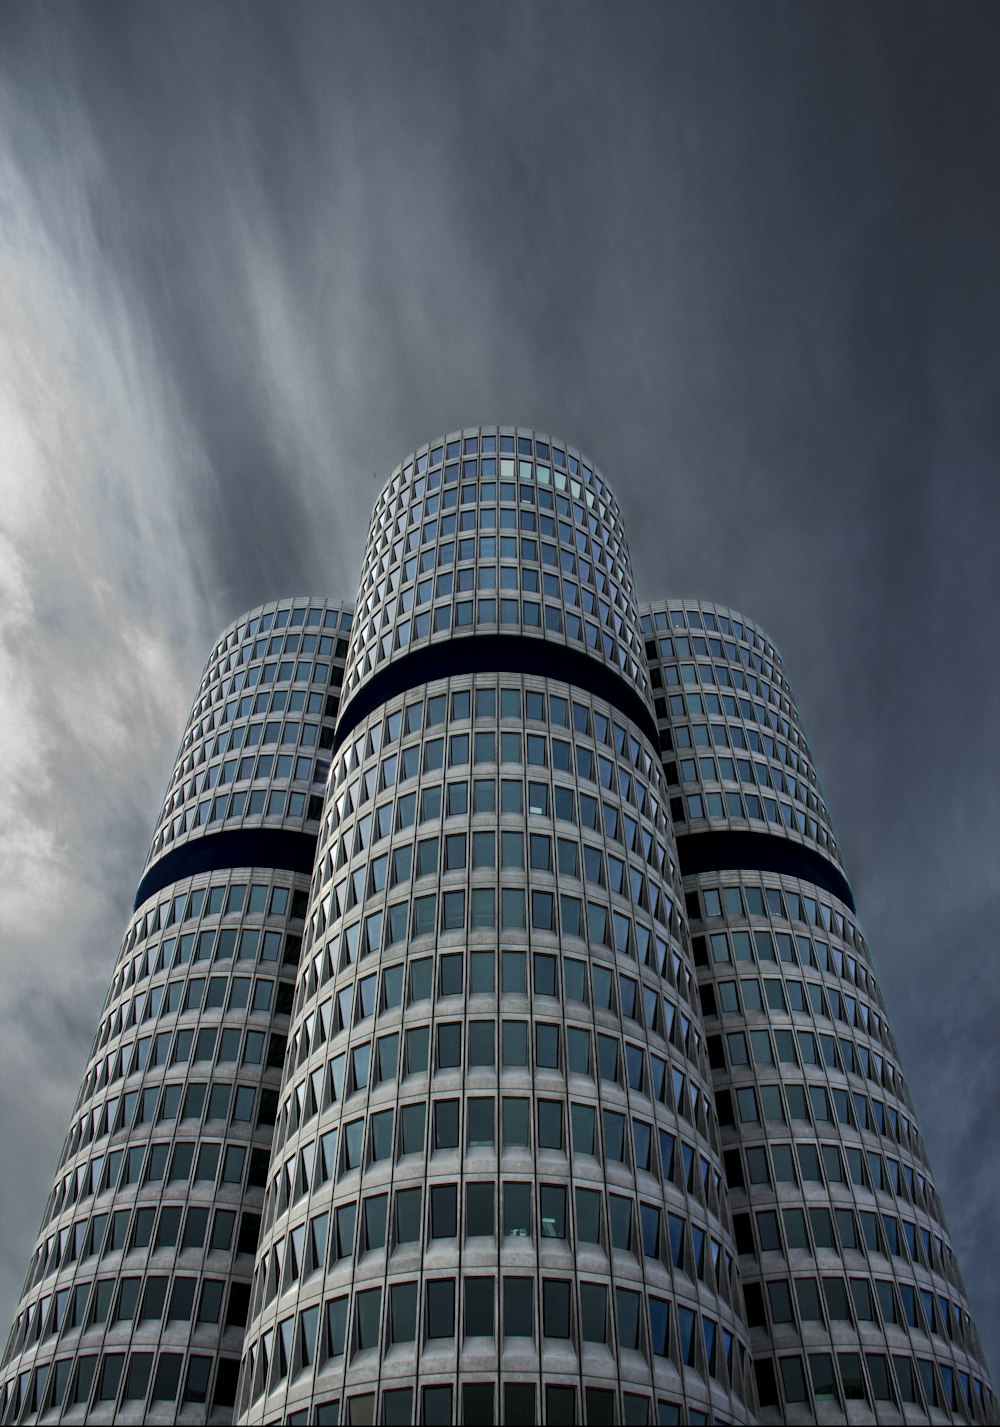 Photographie de vue en contre-plongée d’un bâtiment gris